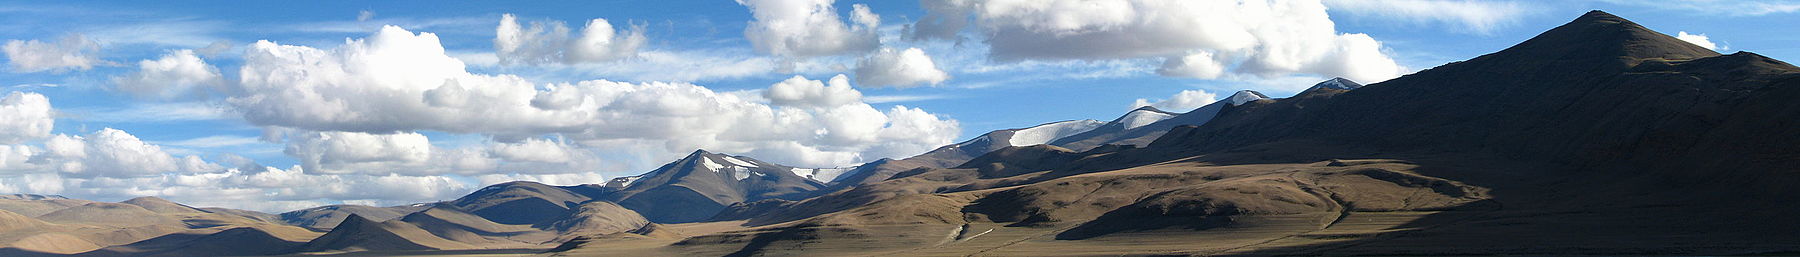 Bergen in het oosten van Ladakh, India